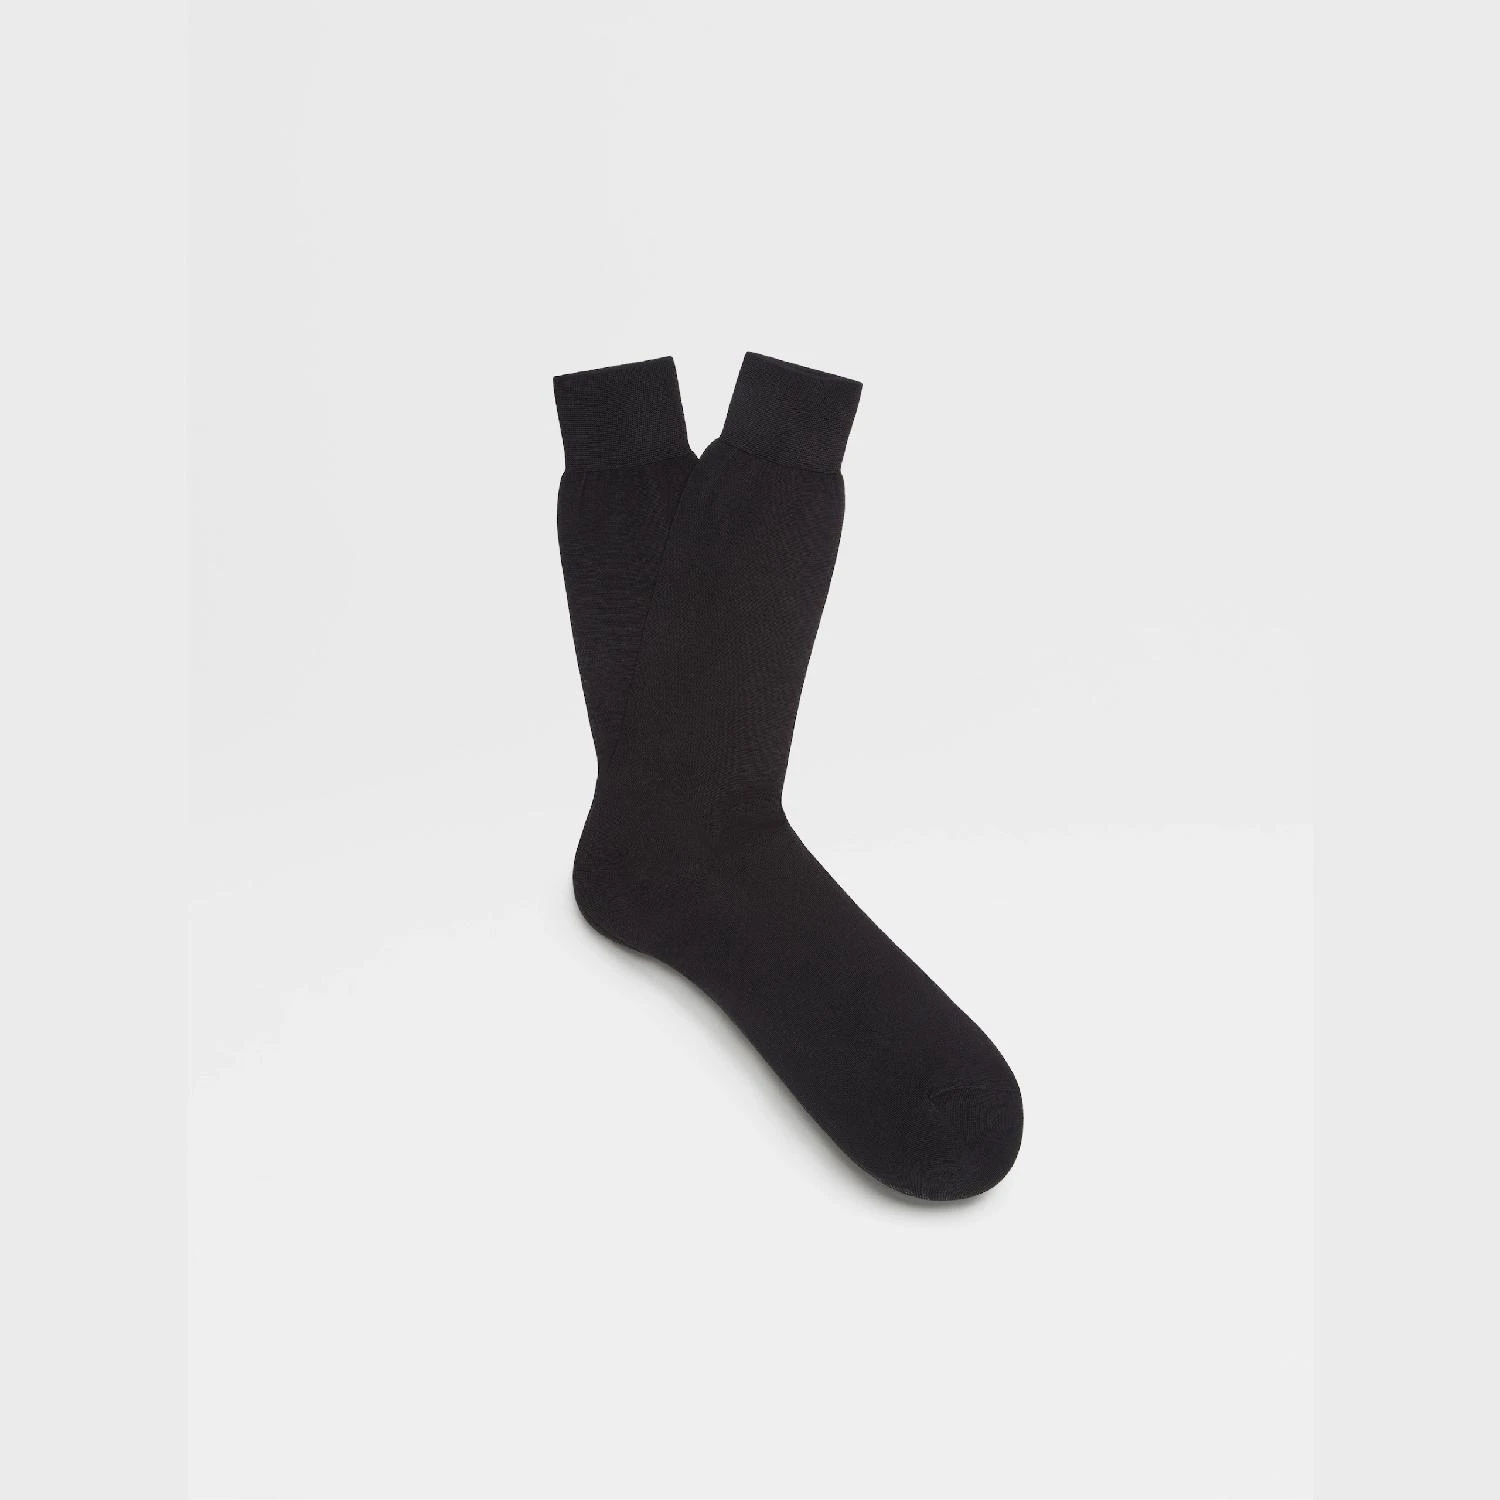 包邮包税【预售7天发货】 ZEGNA杰尼亚 23秋冬 男士 袜子 Black Cotton Socks N4V40-012-001 商品